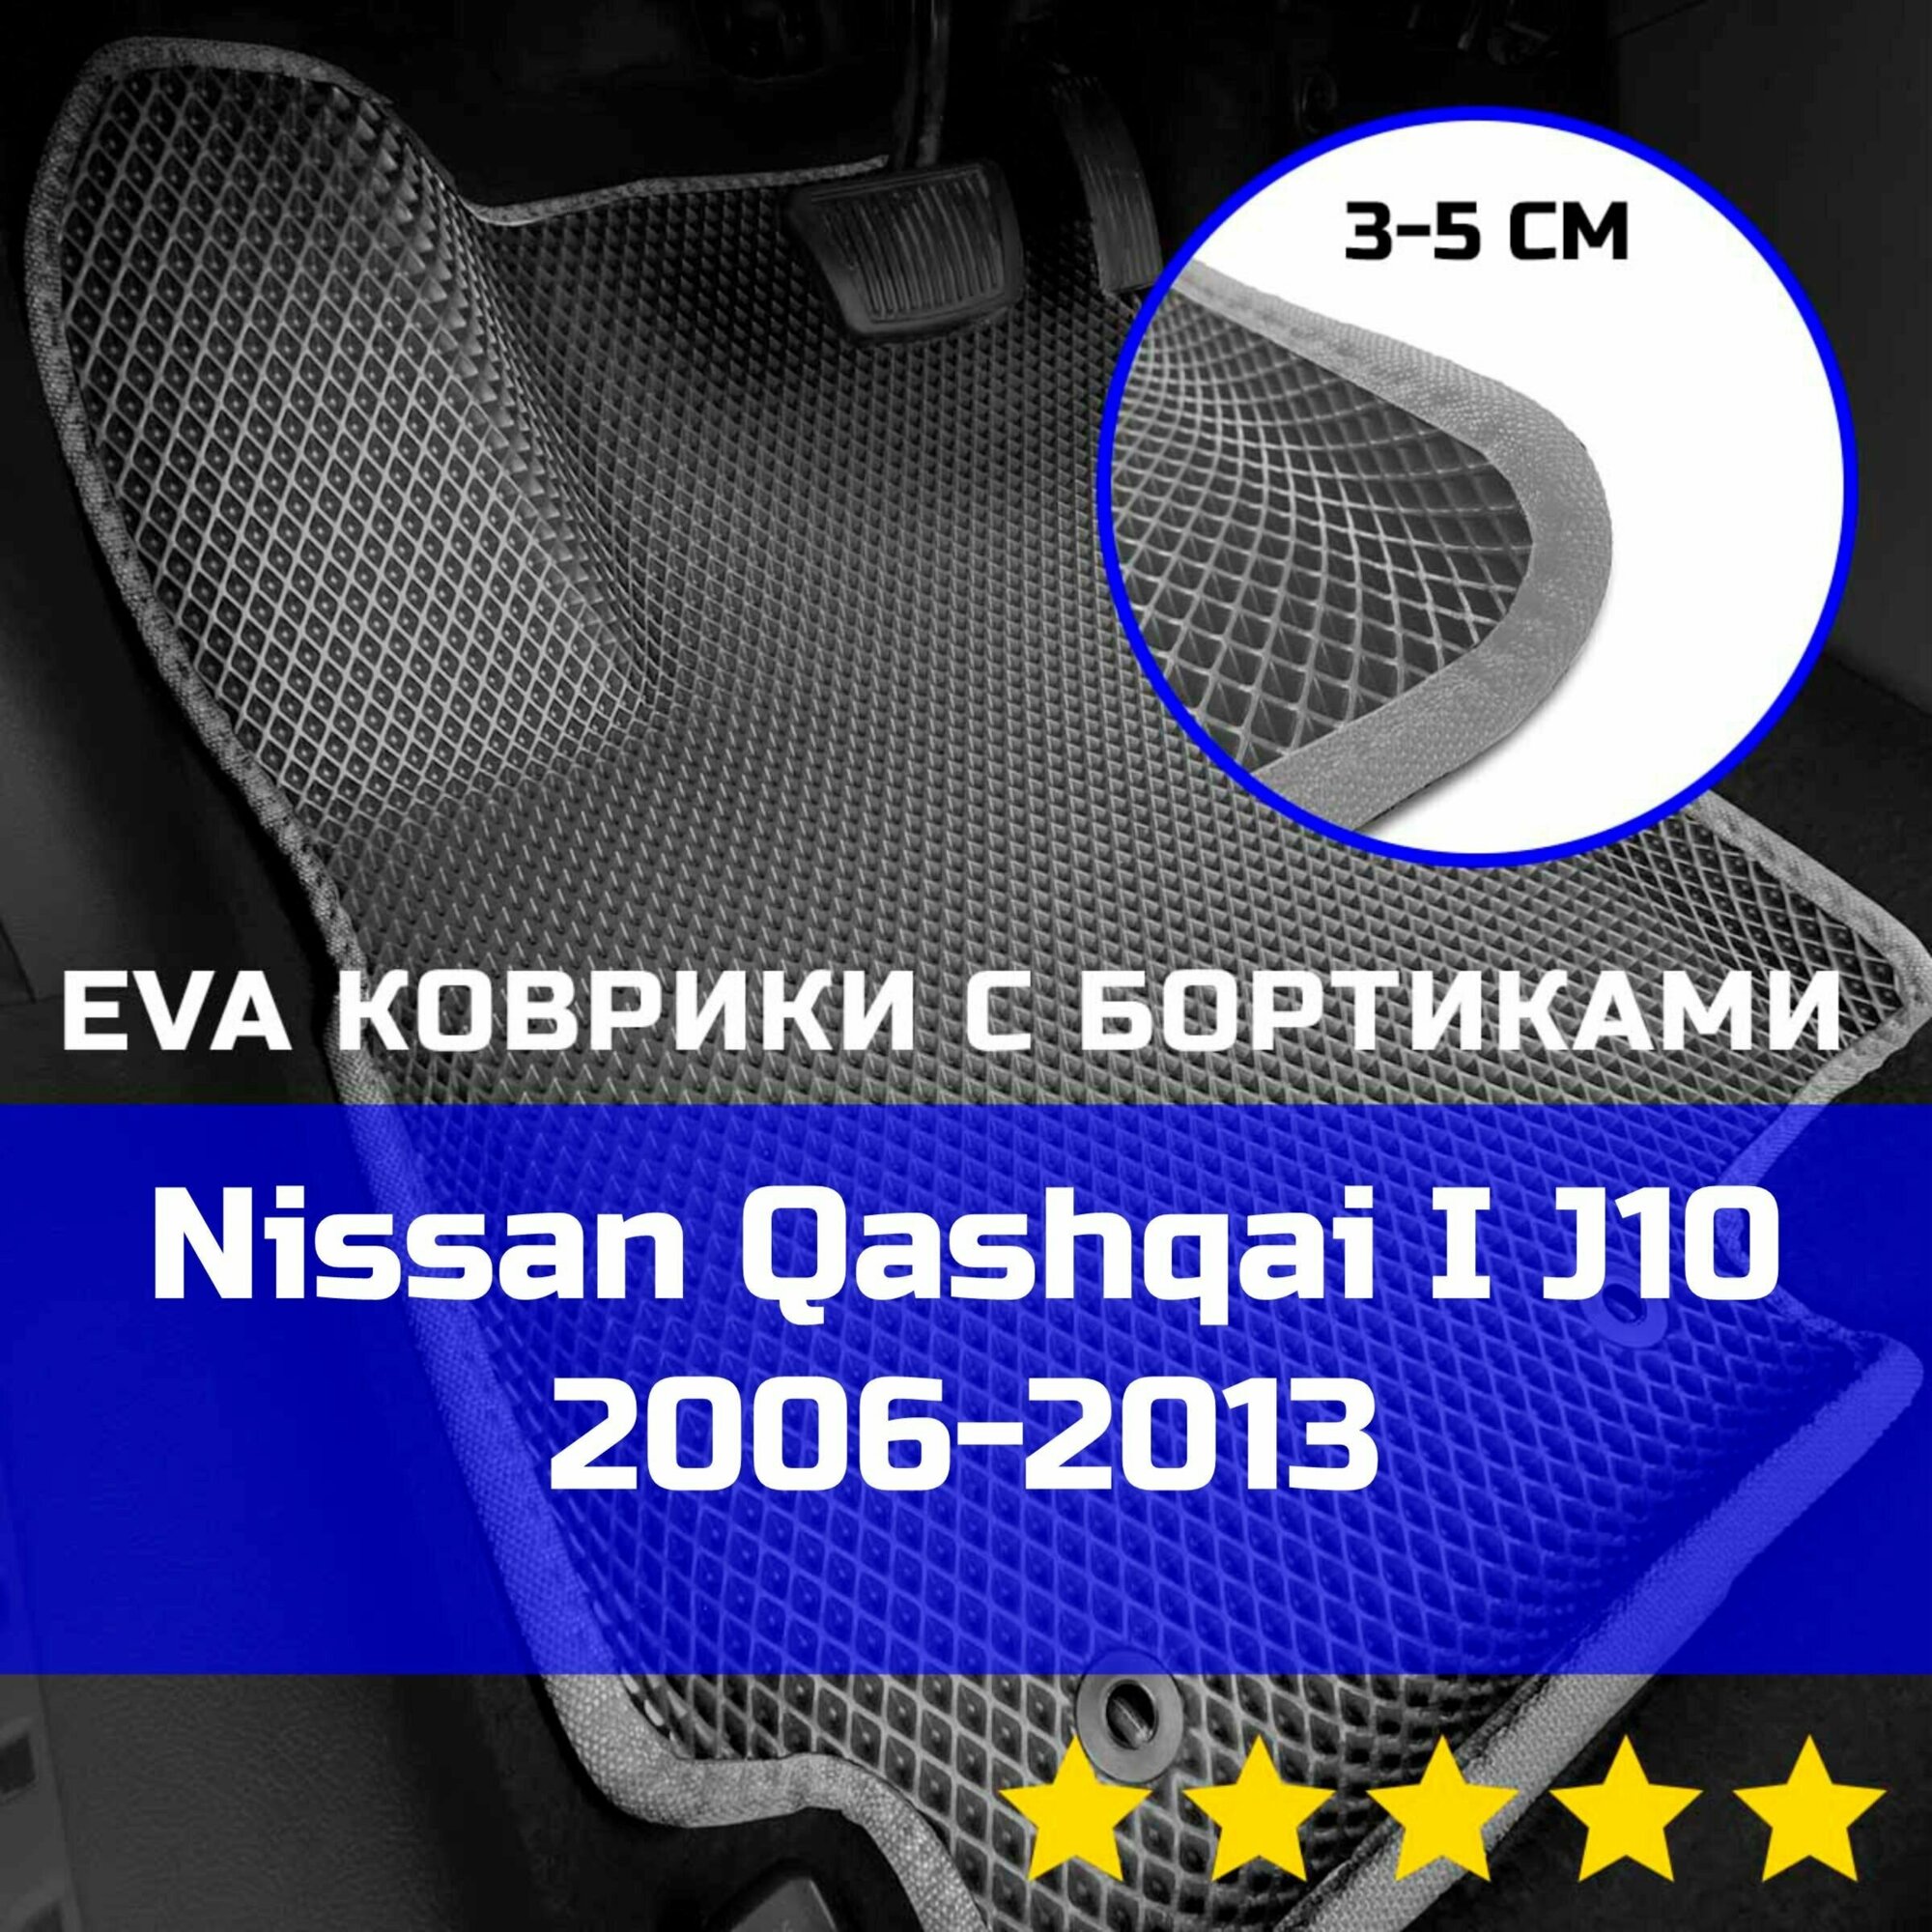 3Д коврики ЕВА (EVA, ЭВА) с бортиками на Nissan Qashqai 1 J10 2006-2013 Ниссан (Нисан) Кашкай Левый руль Ромб Серый со светло-серой окантовкой